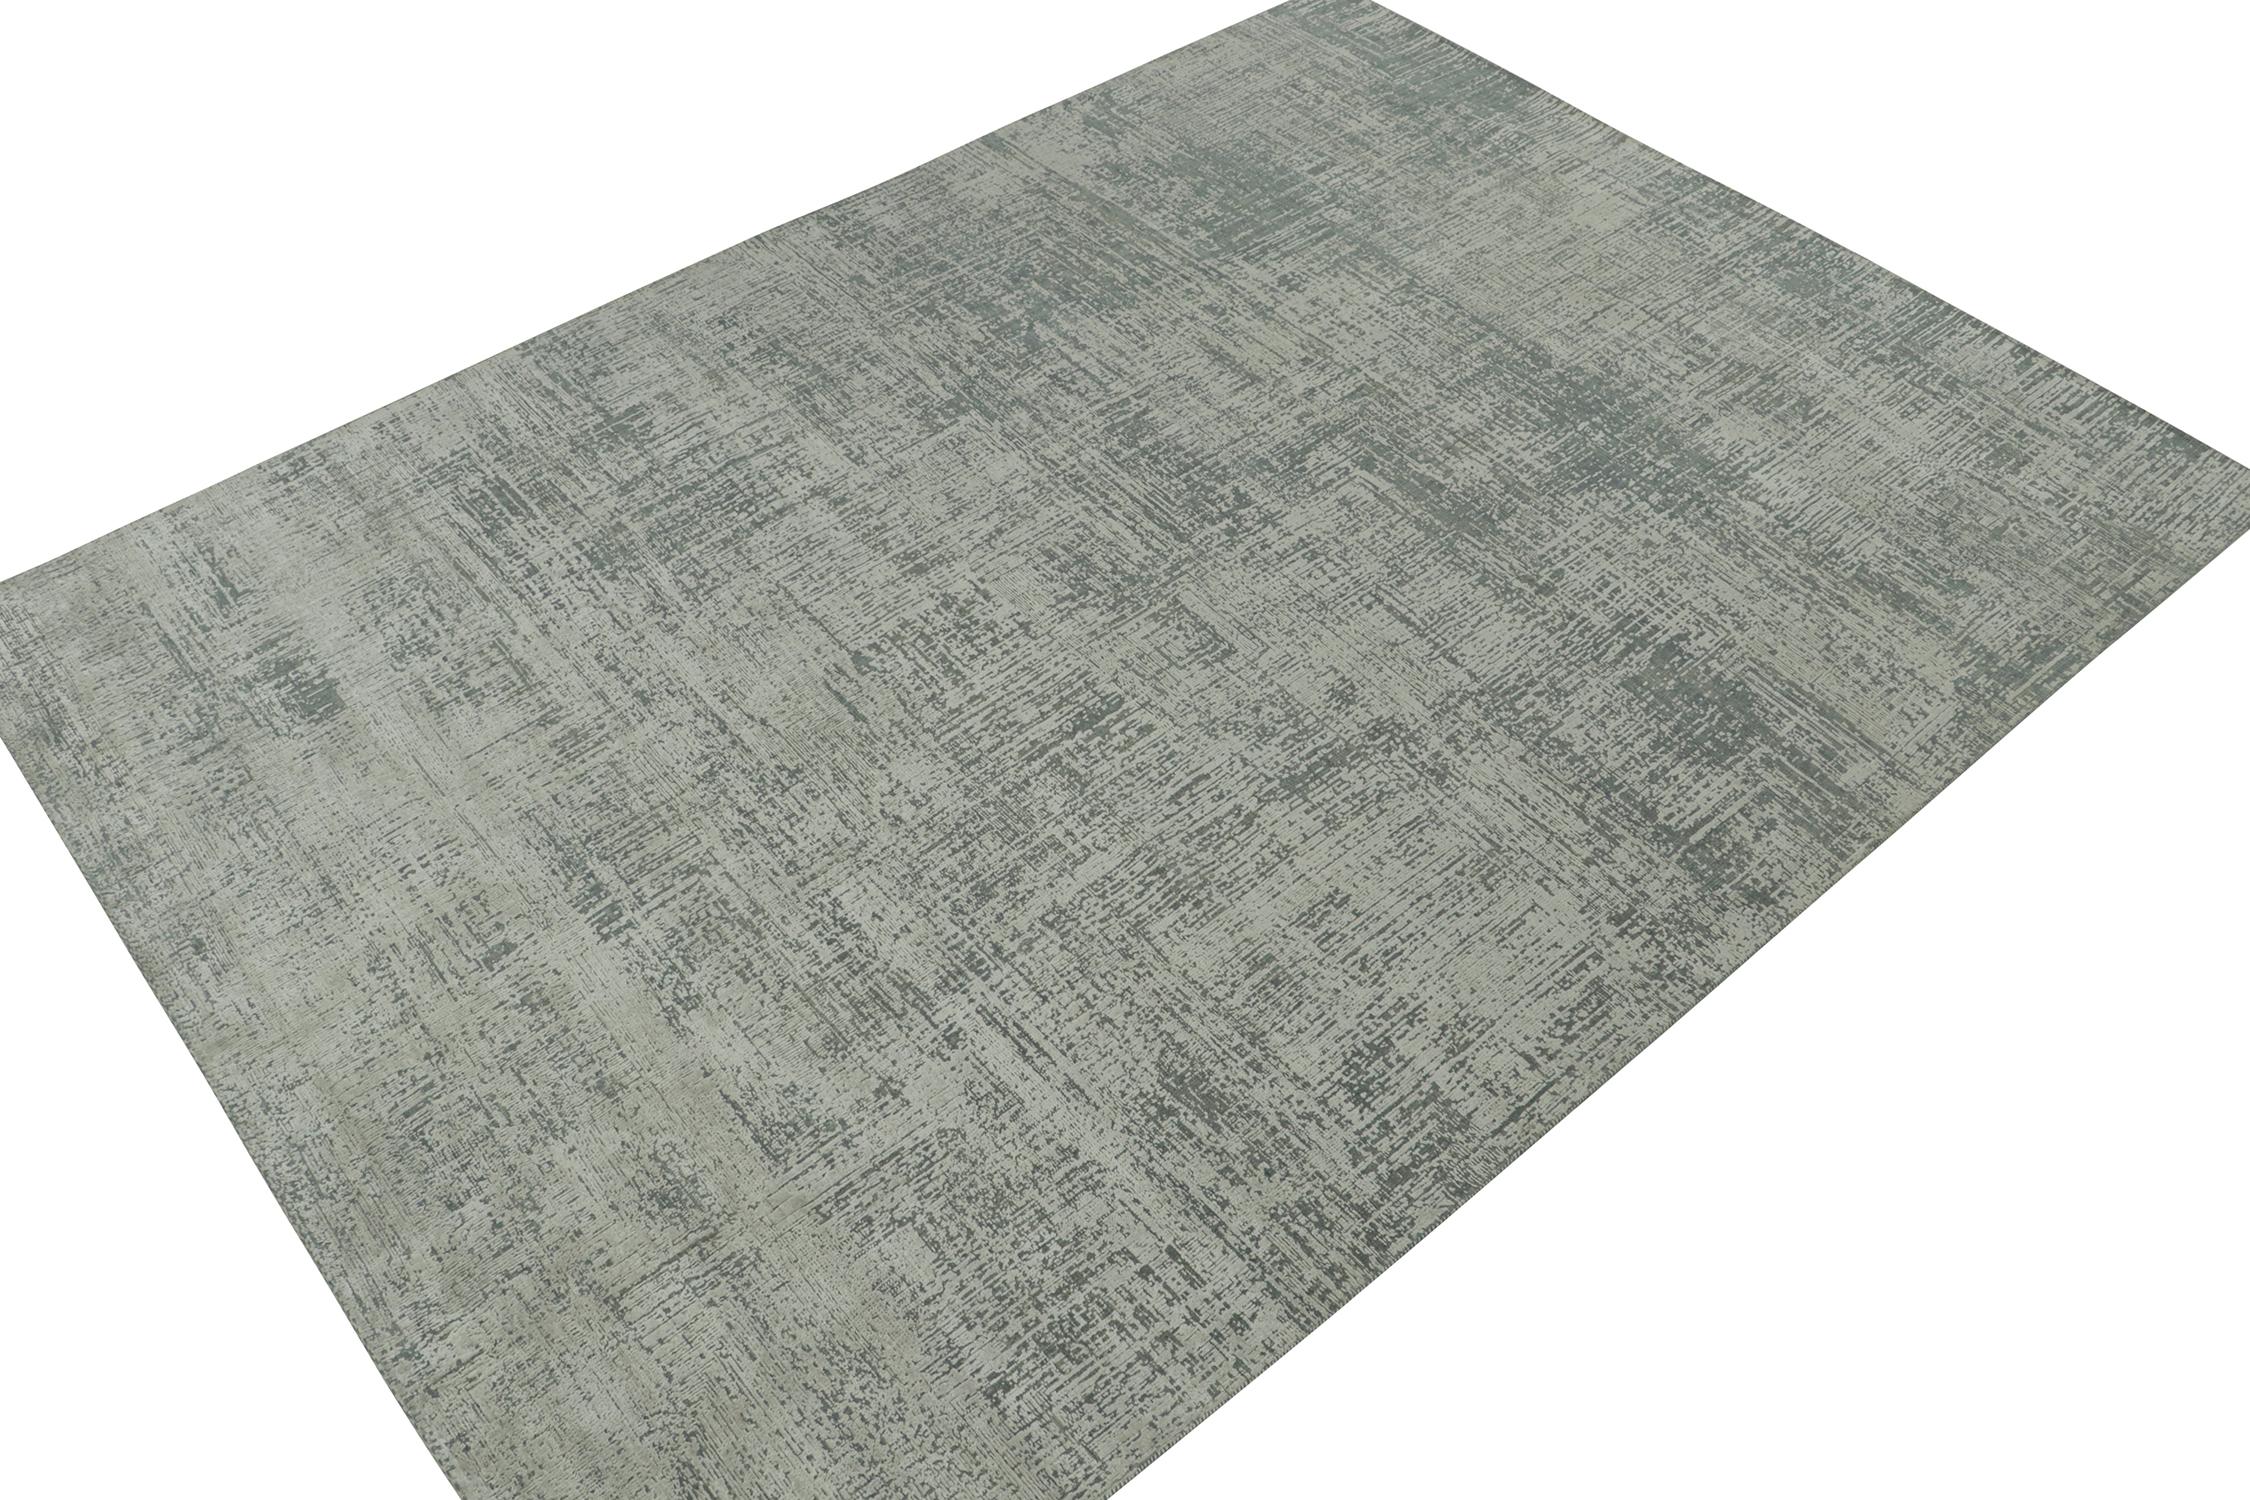 Ce tapis abstrait 9x12 est le prochain ajout splendide à la gamme de tapis modernes et audacieux de Rug & Kilim. Noué à la main en laine et en soie.
Plus loin dans le Design : 
Cette pièce présente des stries géométriques en gris et des accents bleu